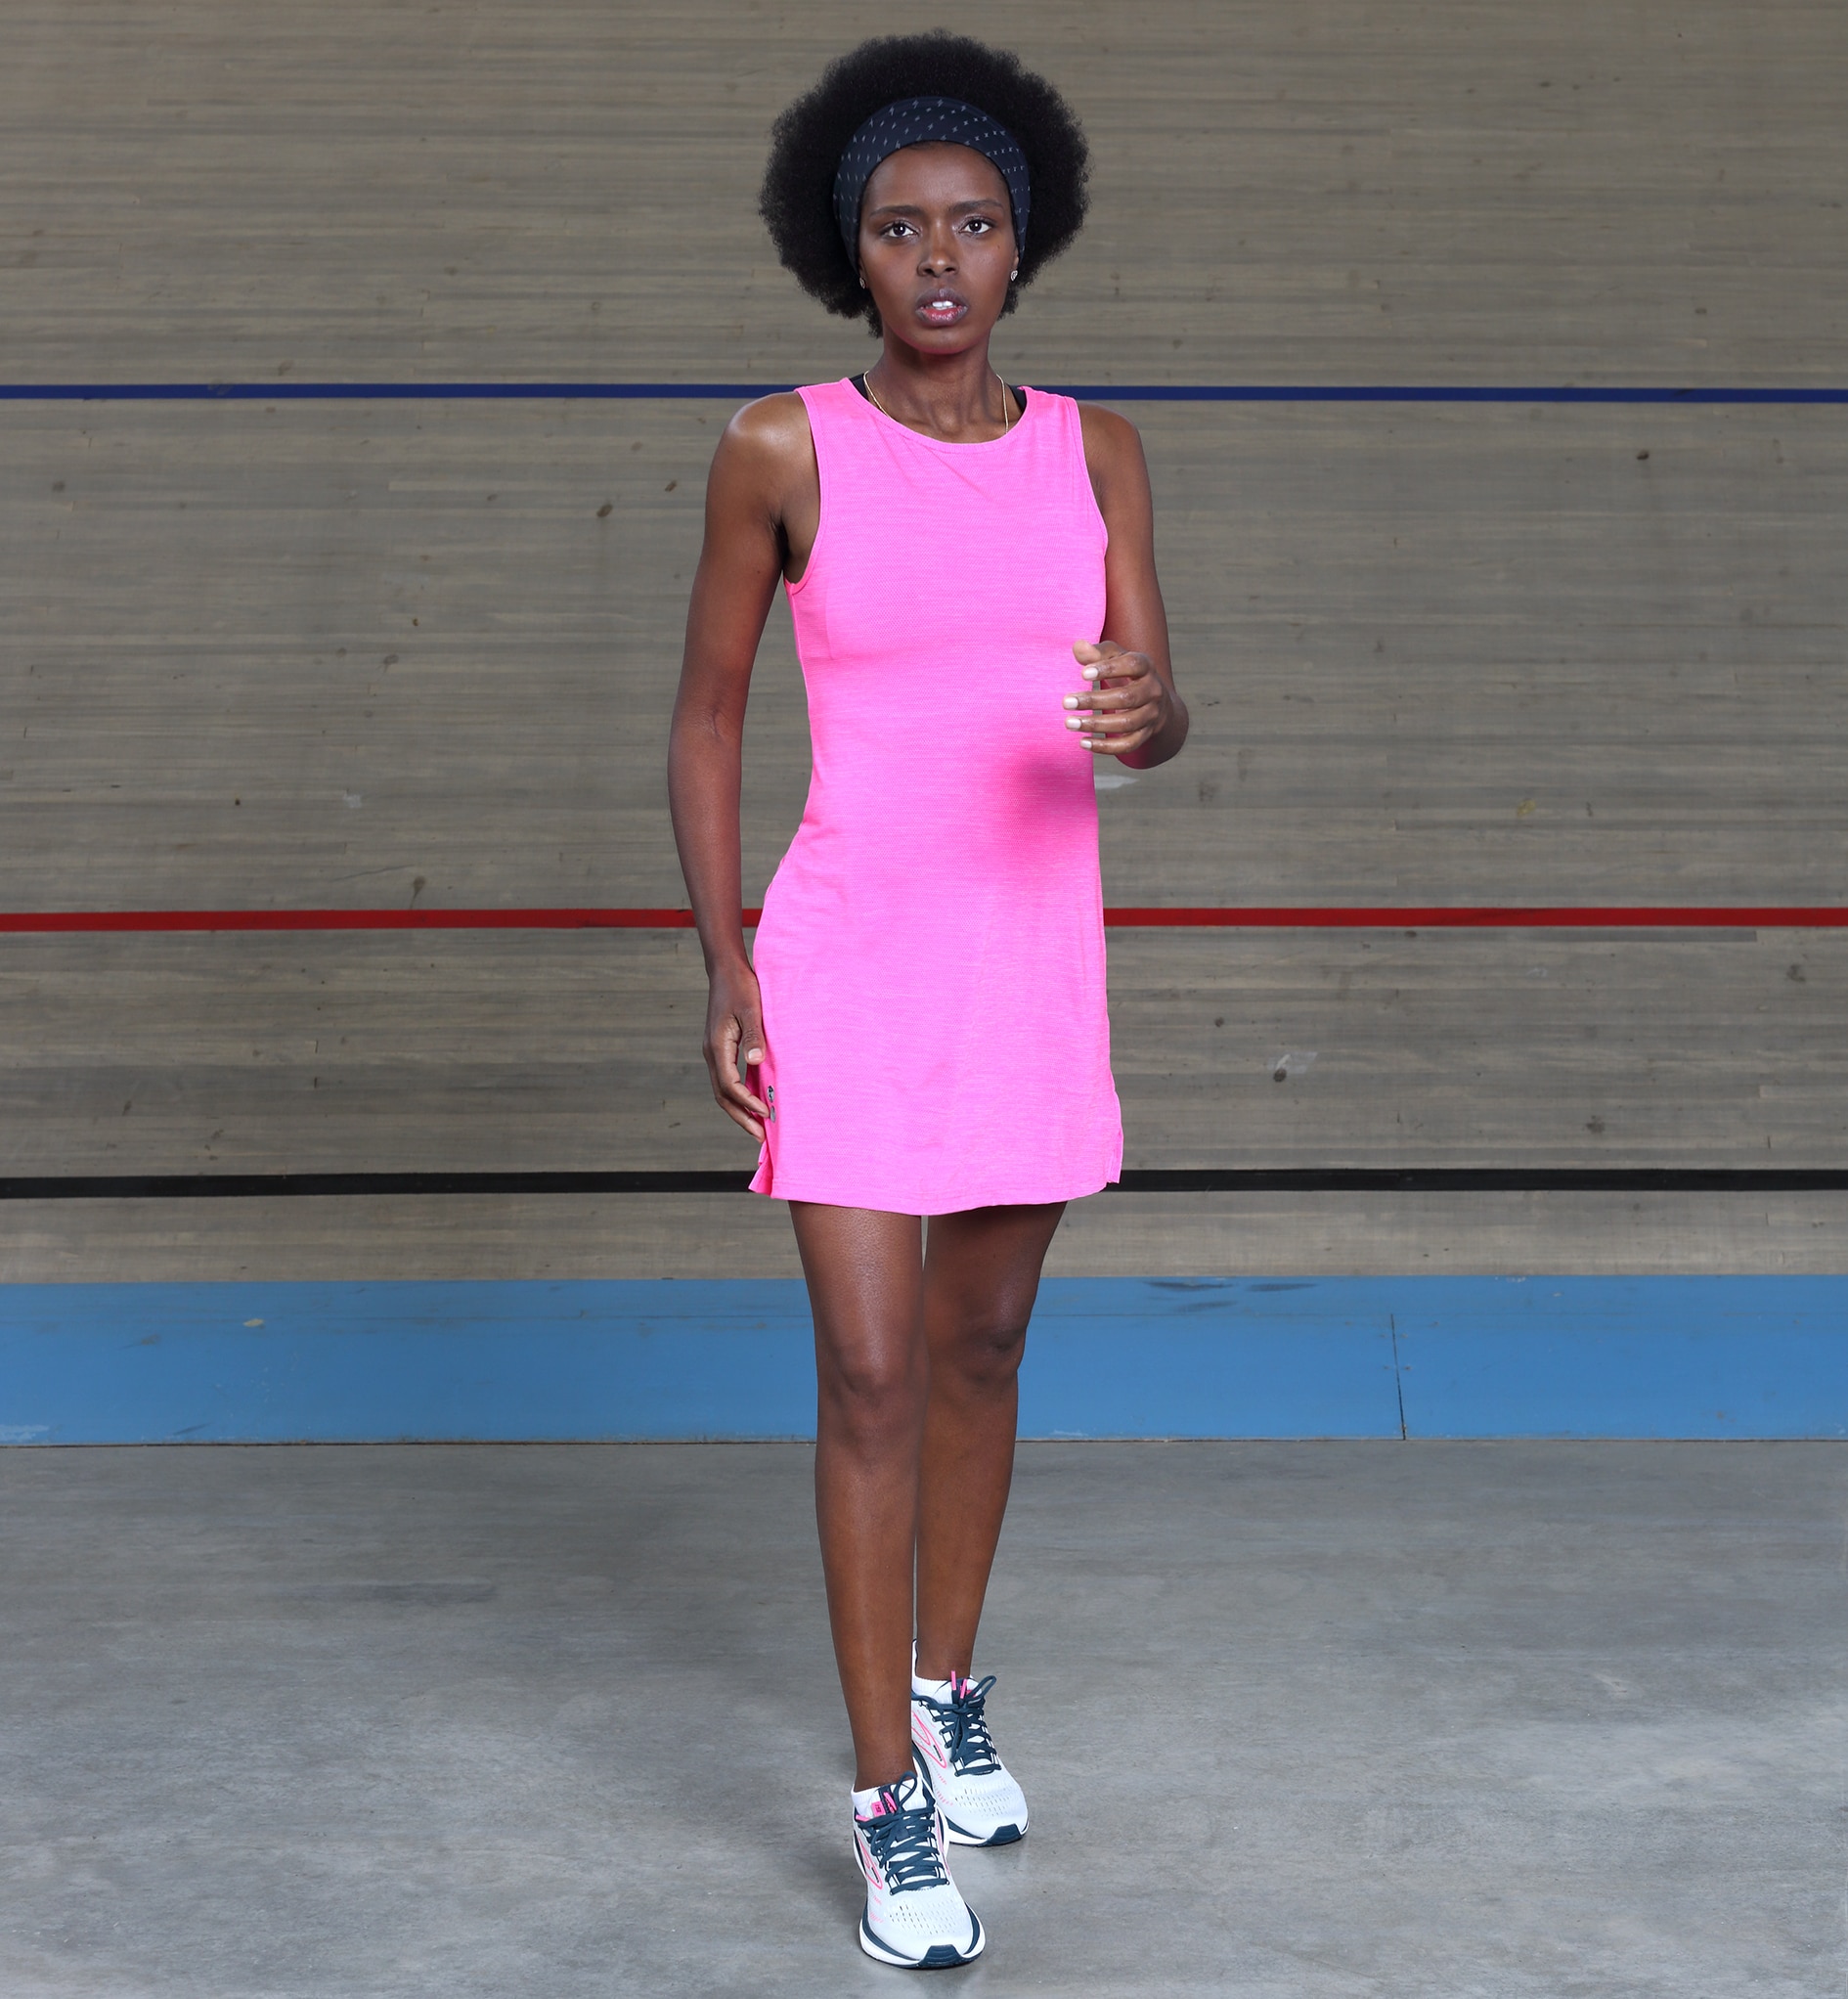 שמלת ריצה, FIVE:AM, Running dress, Breezy Pink